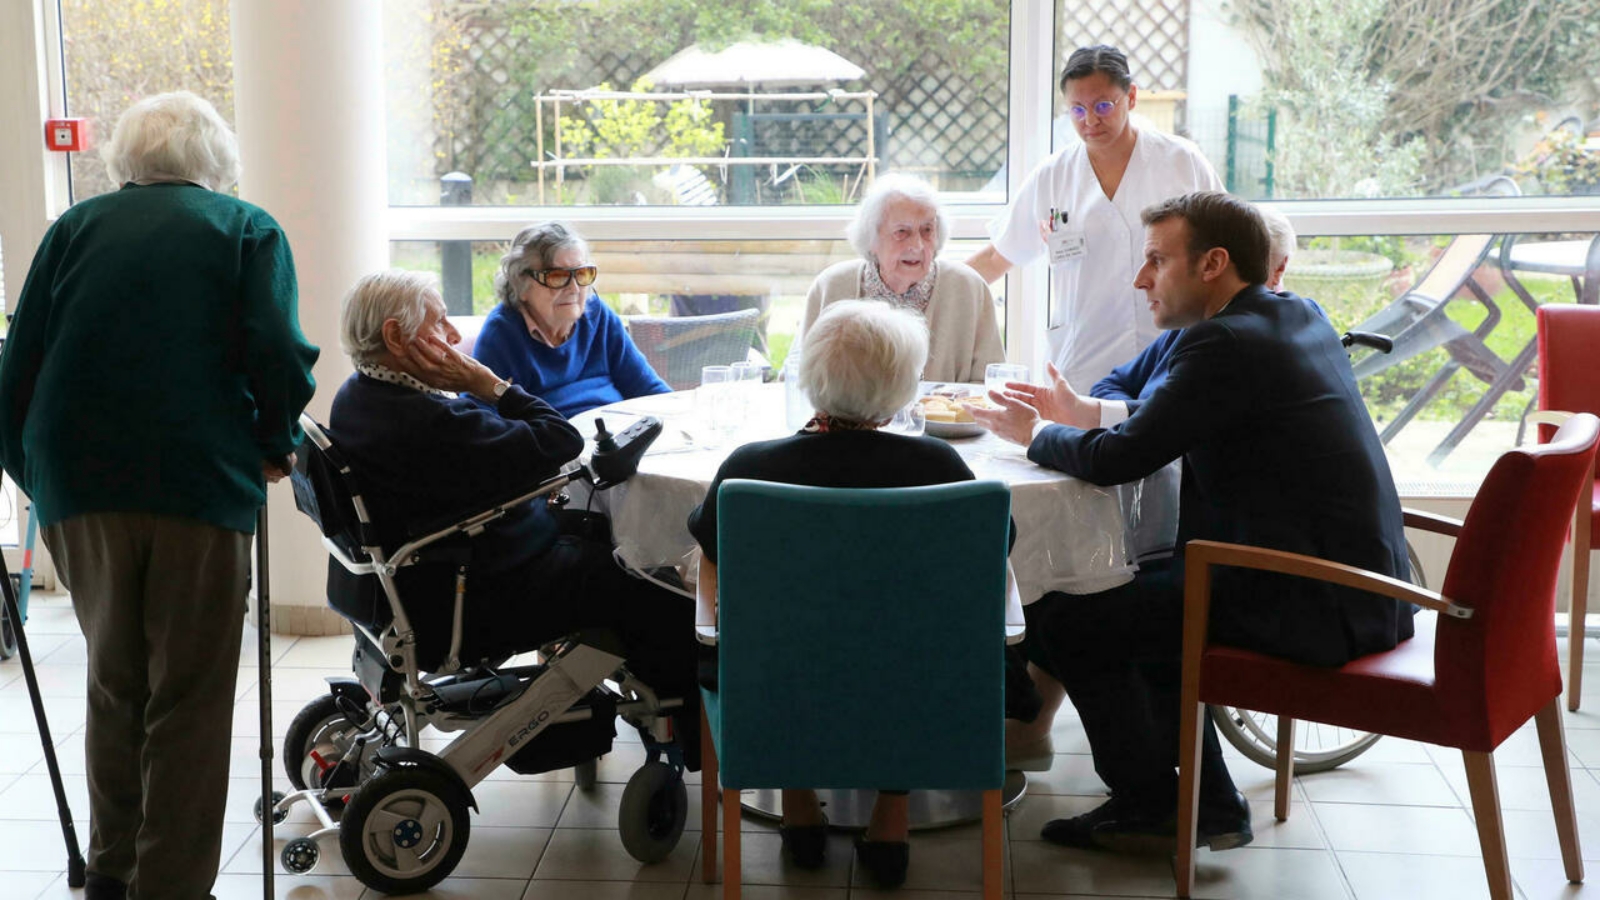 الرئيس الفرنسي إيمانويل ماكرون يتحدث مع كبار السن خلال زيارة إلى EHPAD (مؤسسة إسكان كبار السن المعالين)، في باريس فرنسا. الجمعة 6 أذار/ مارس 2020.